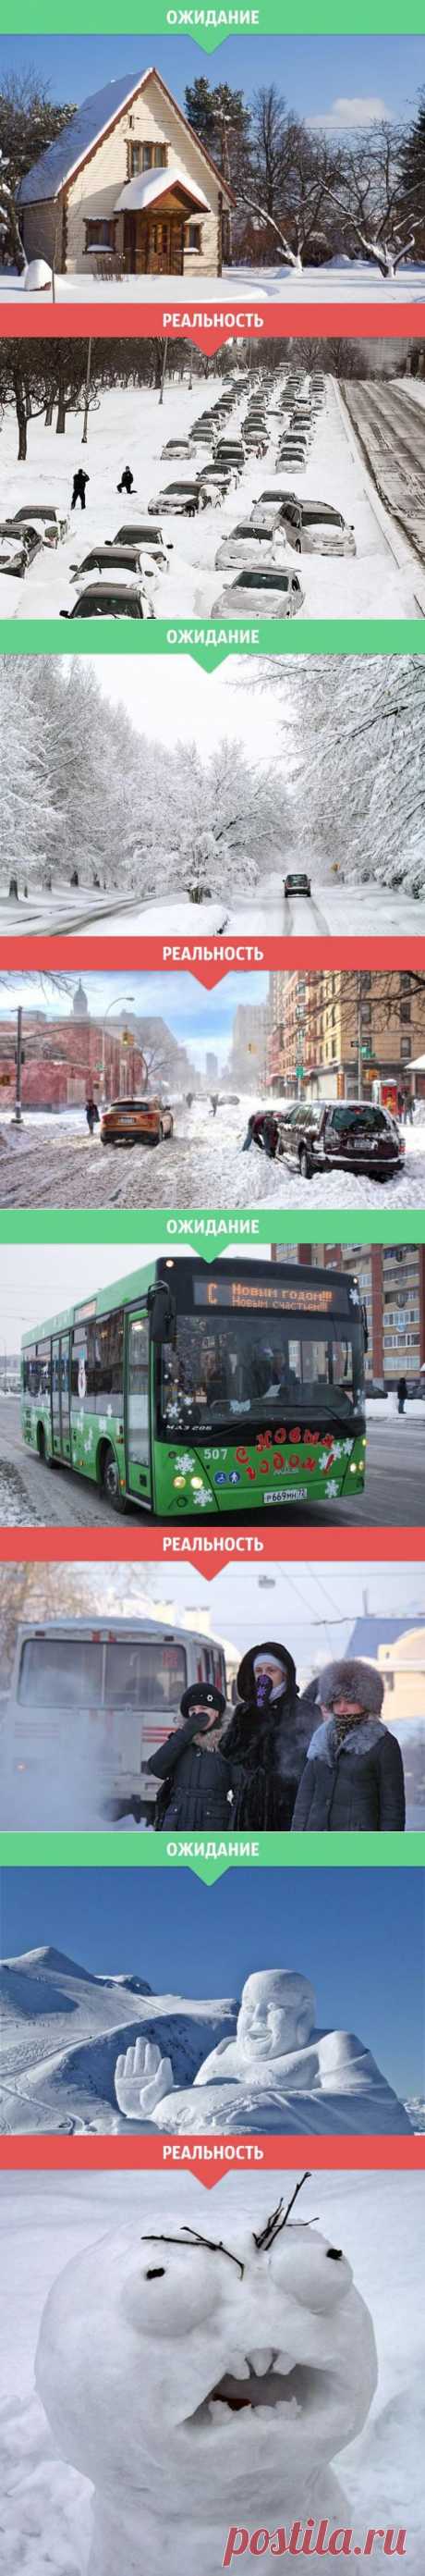 Зимние ожидания и реальность Прикольные картинки на fun.tochka.net от 23 Ноября,  2014